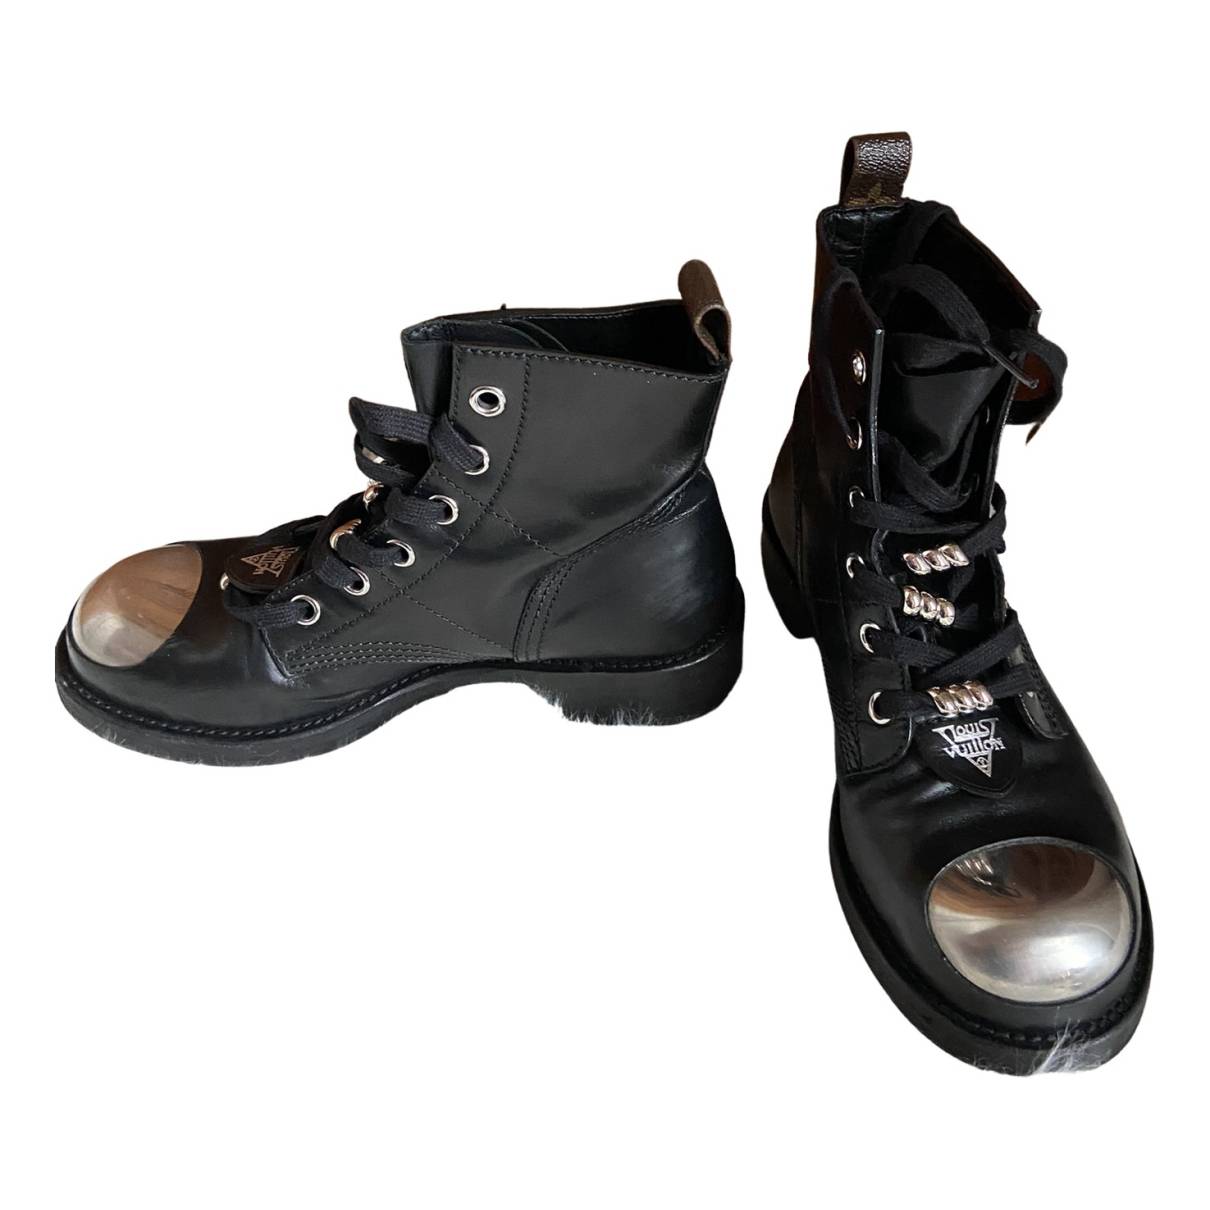 LV Ranger Ankle Boot - Men - Shoes